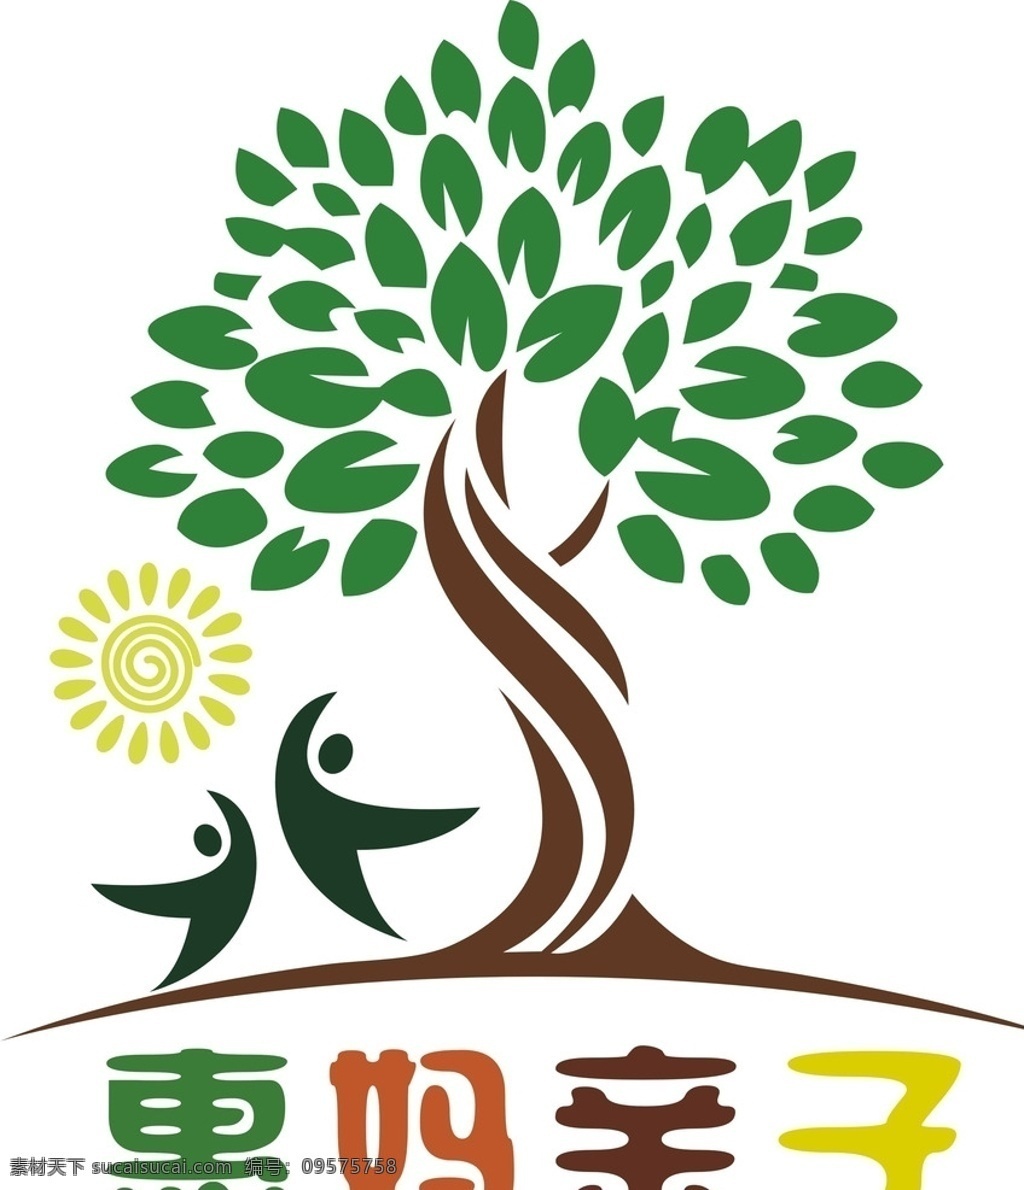 亲子园 logo 矢量图 亲子园标志 亲子乐园 标志 亲子 标志图标 企业 公共标识标志